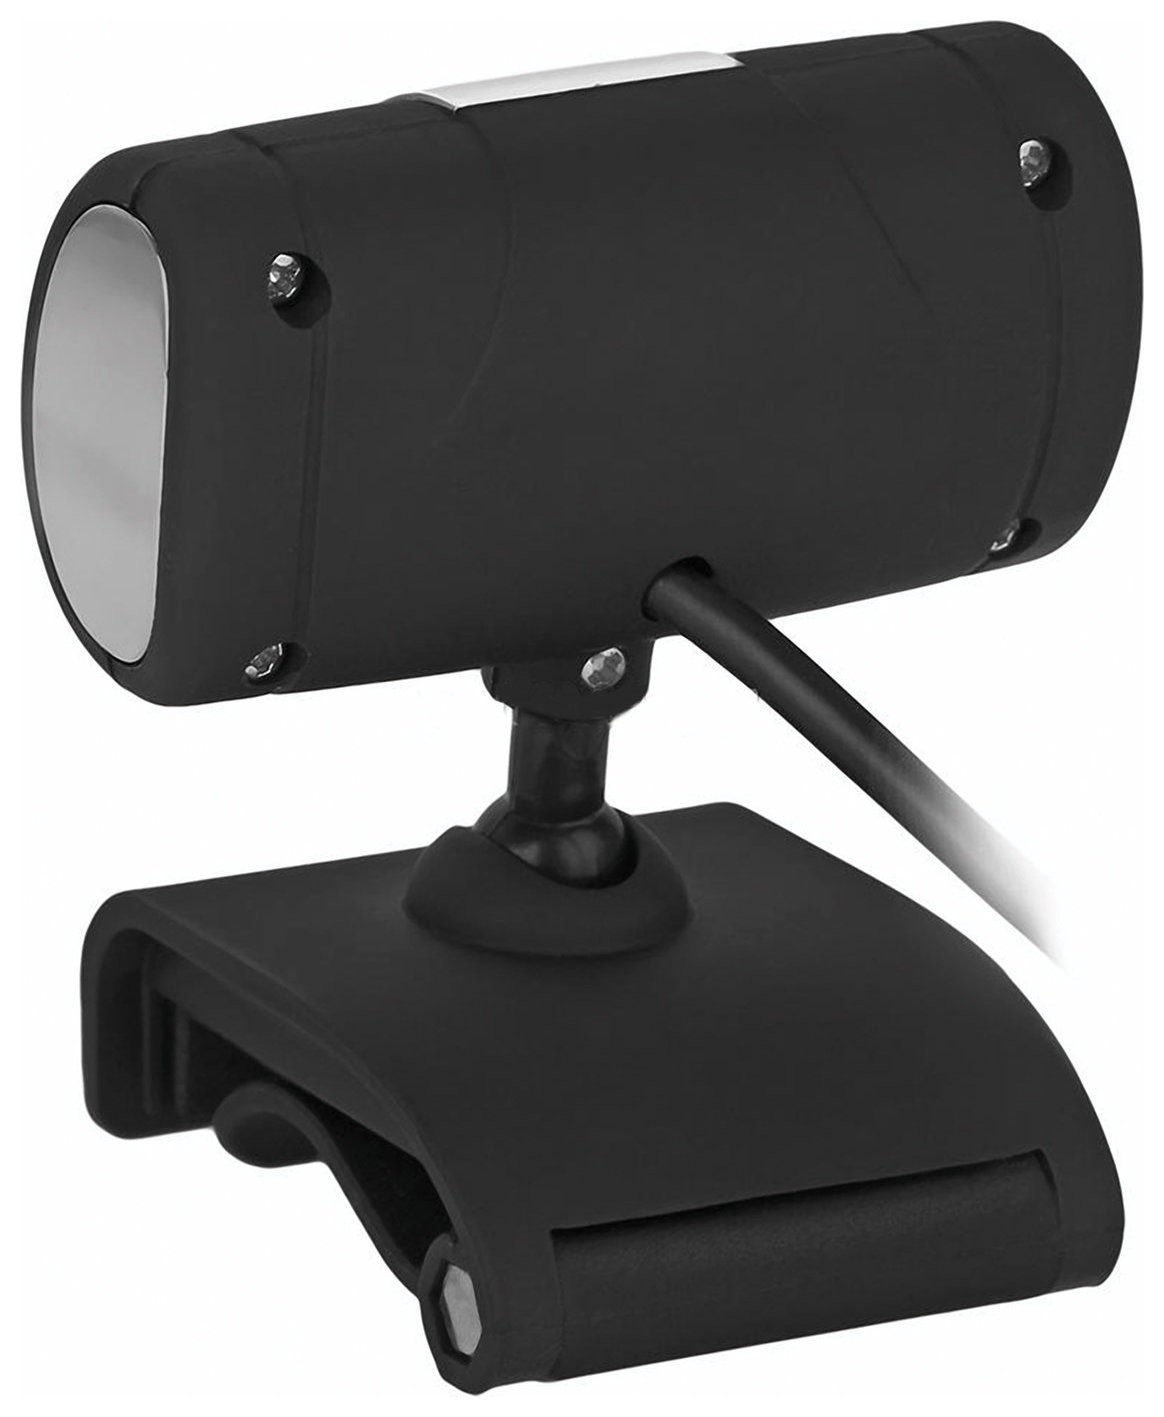 Веб-камера IC-525, 1,3 Мп, микрофон, USB 2.0, регулируемое крепление, черная, SV